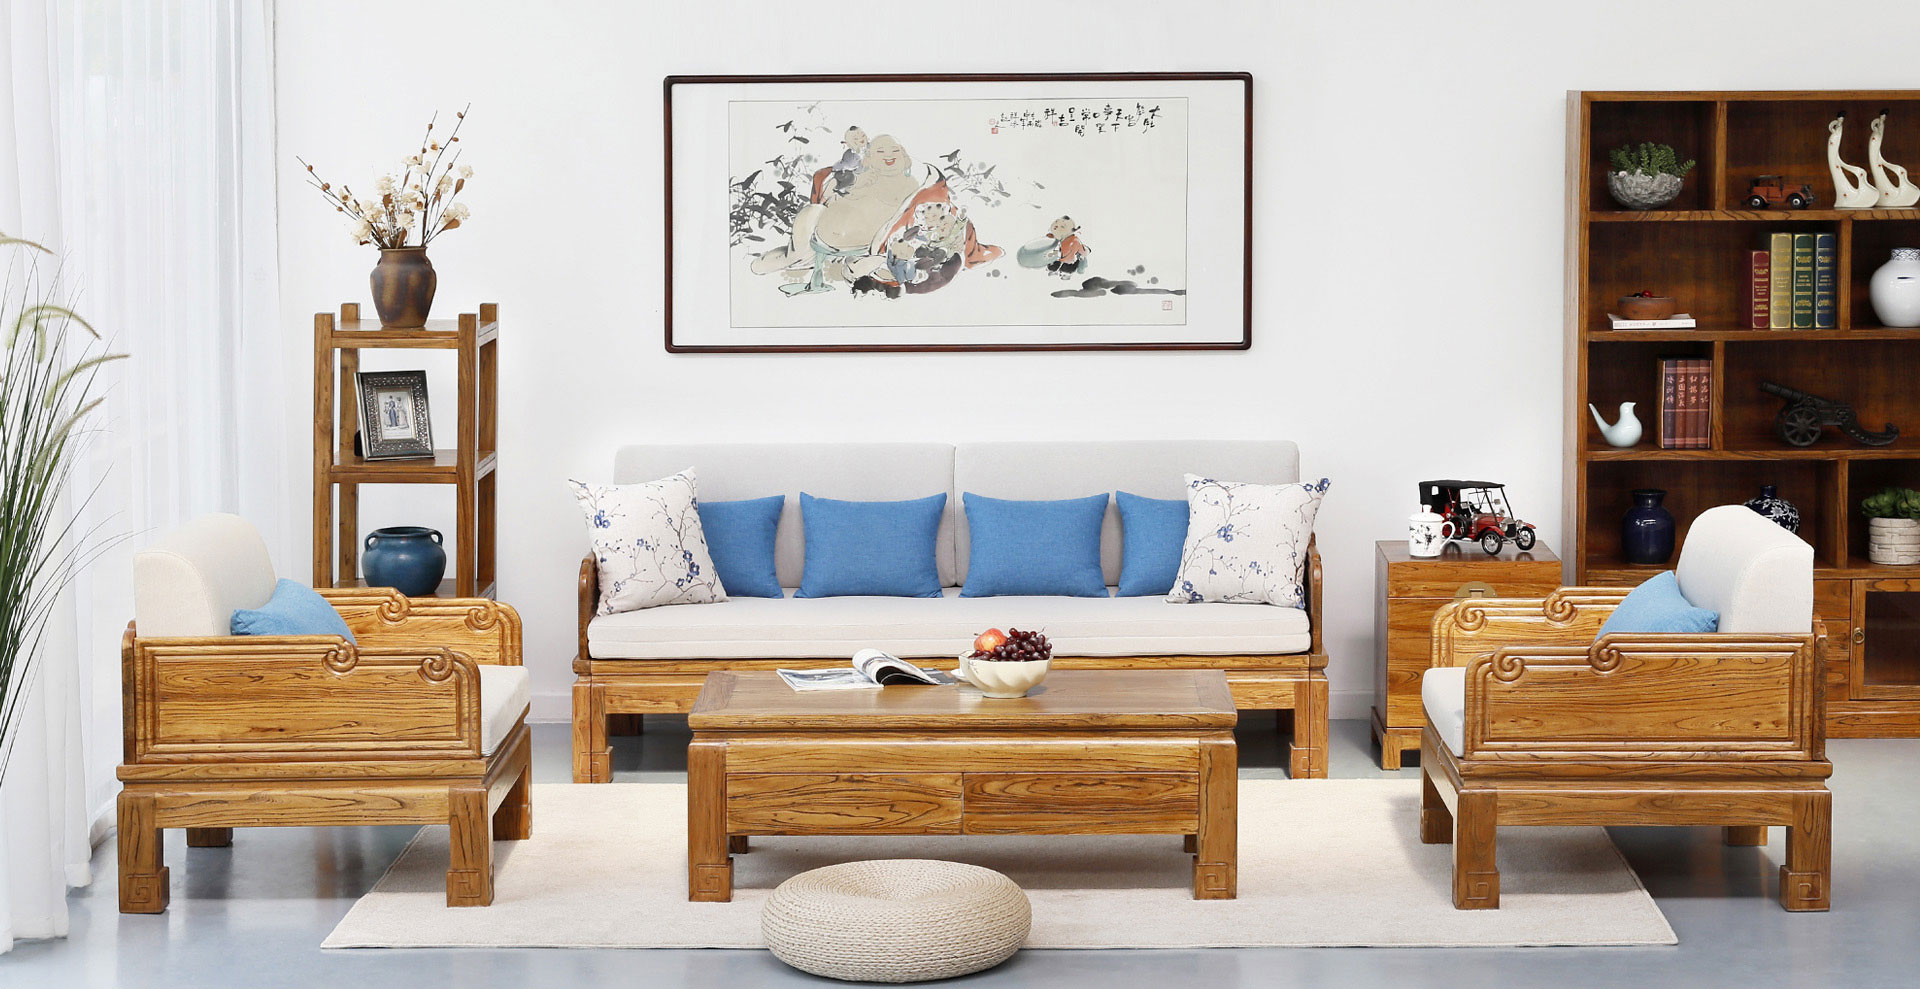 老榆木家具 沙发 实木沙发 多功能沙发 推拉沙发 沙发床 新中式 全屋定制 装修 古朴年代 实木家具